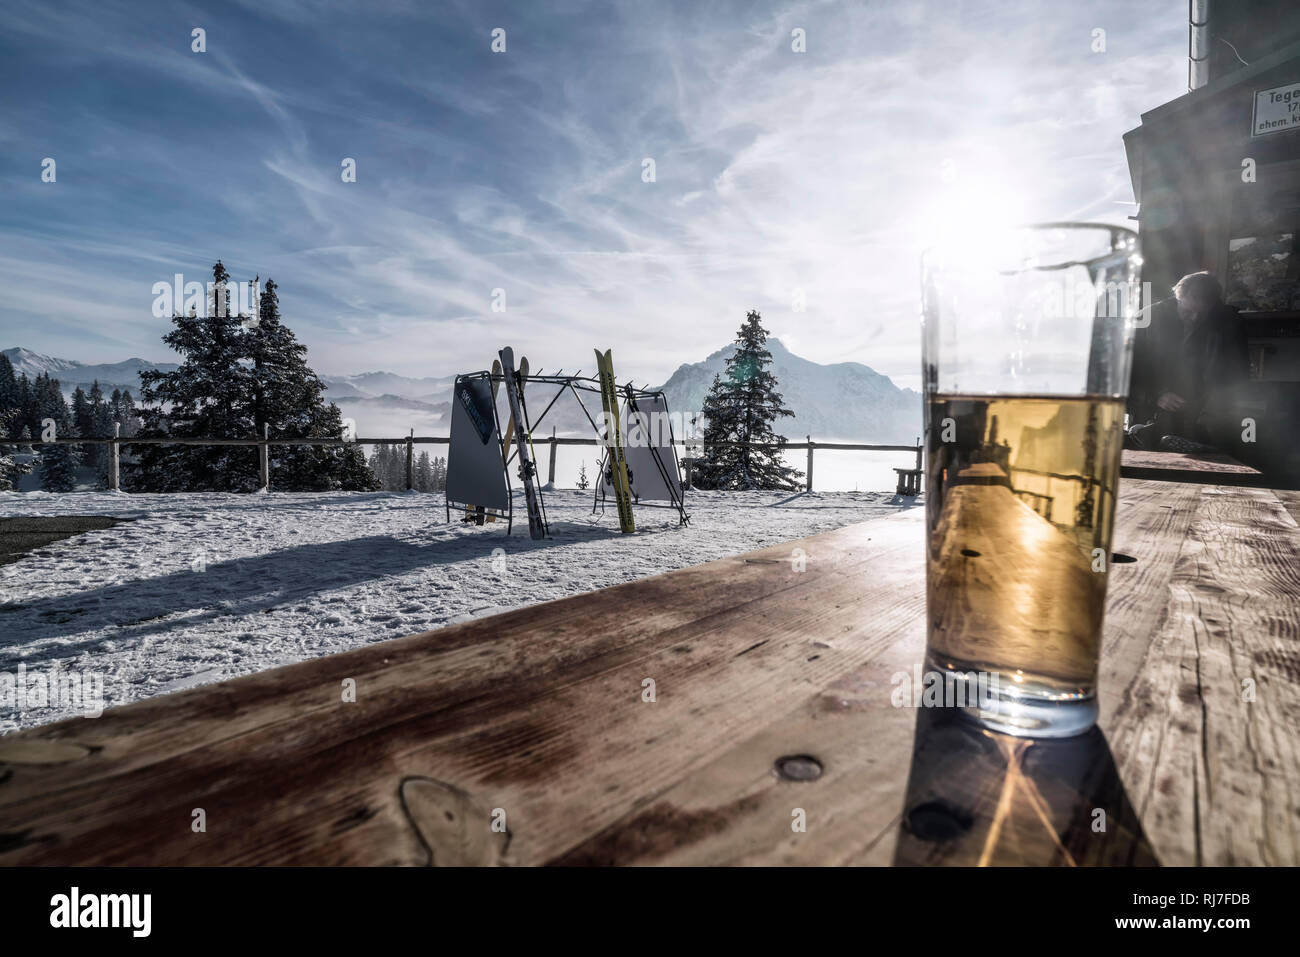 Berglandschaft im Winter am Tegelberg in Süddeutschland, Pause auf einer Berghütte, Getränk auf einem Holztisch Stock Photo